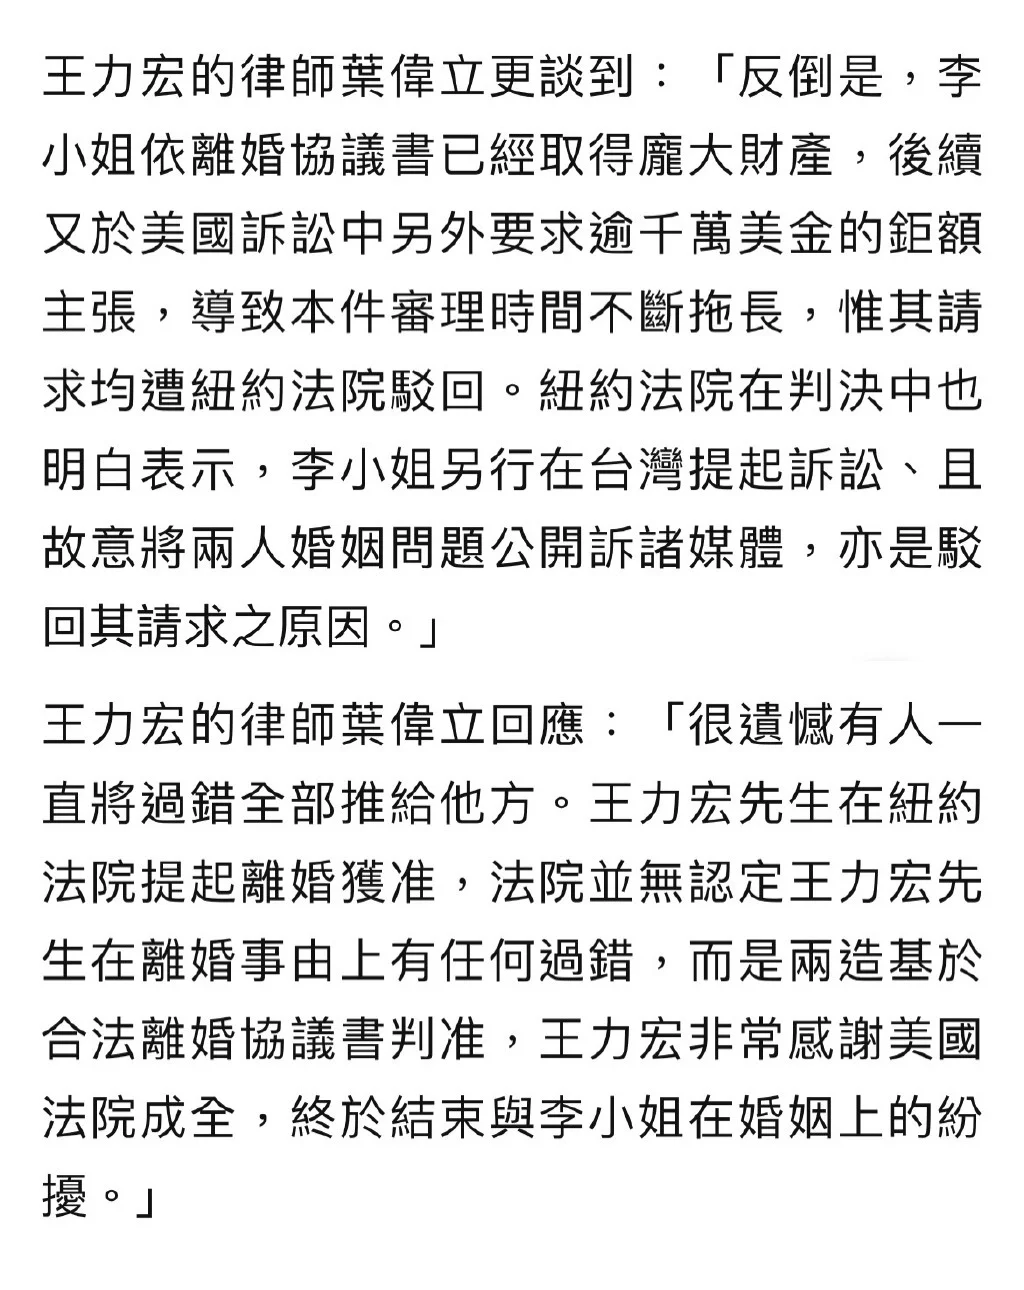 李靓蕾律师陈建州回应 法院裁定王力宏为过错方